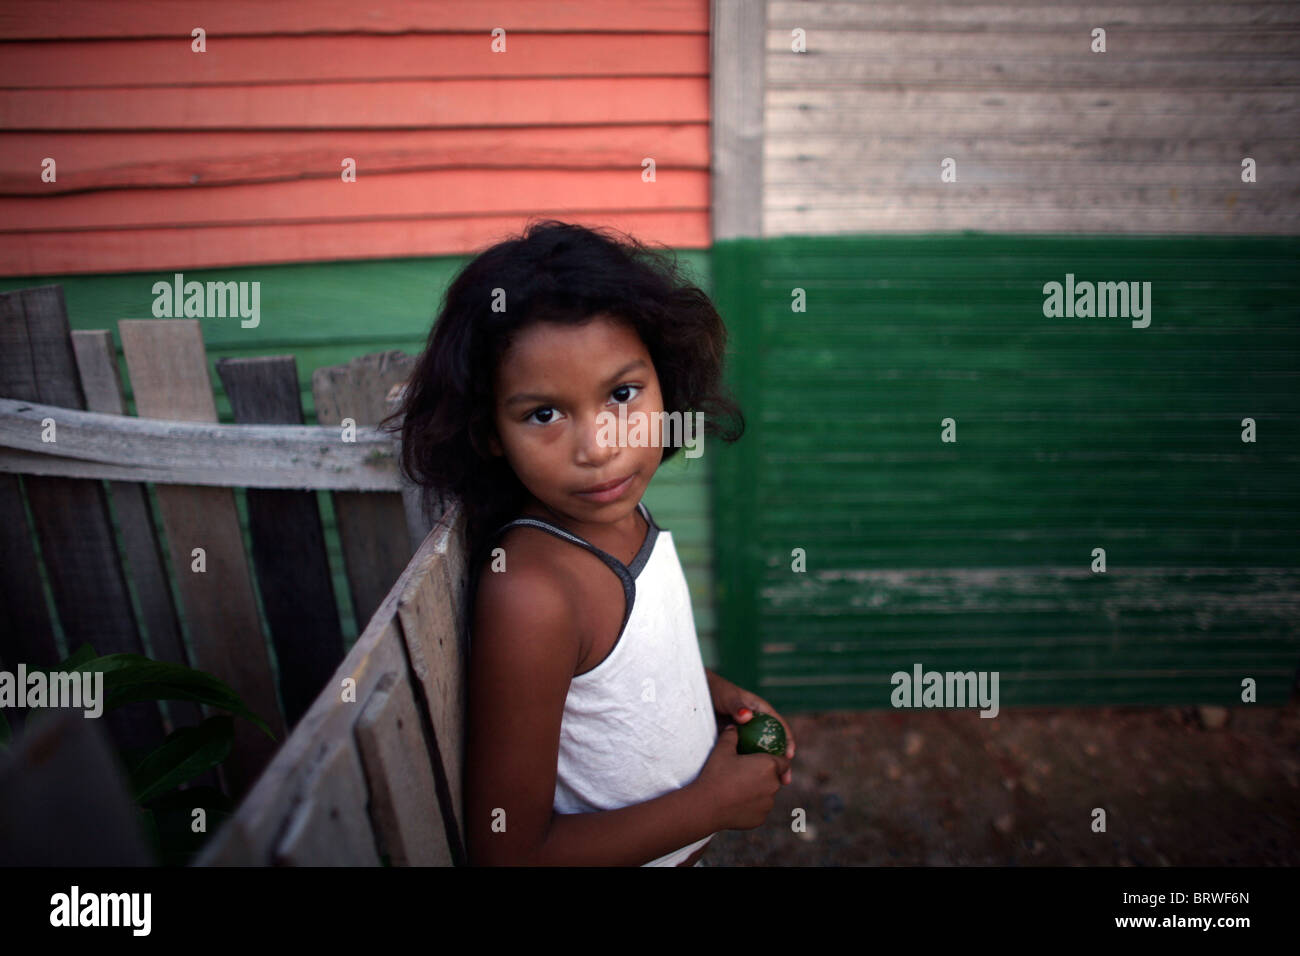 slum inhabitants in Colombia Stock Photo